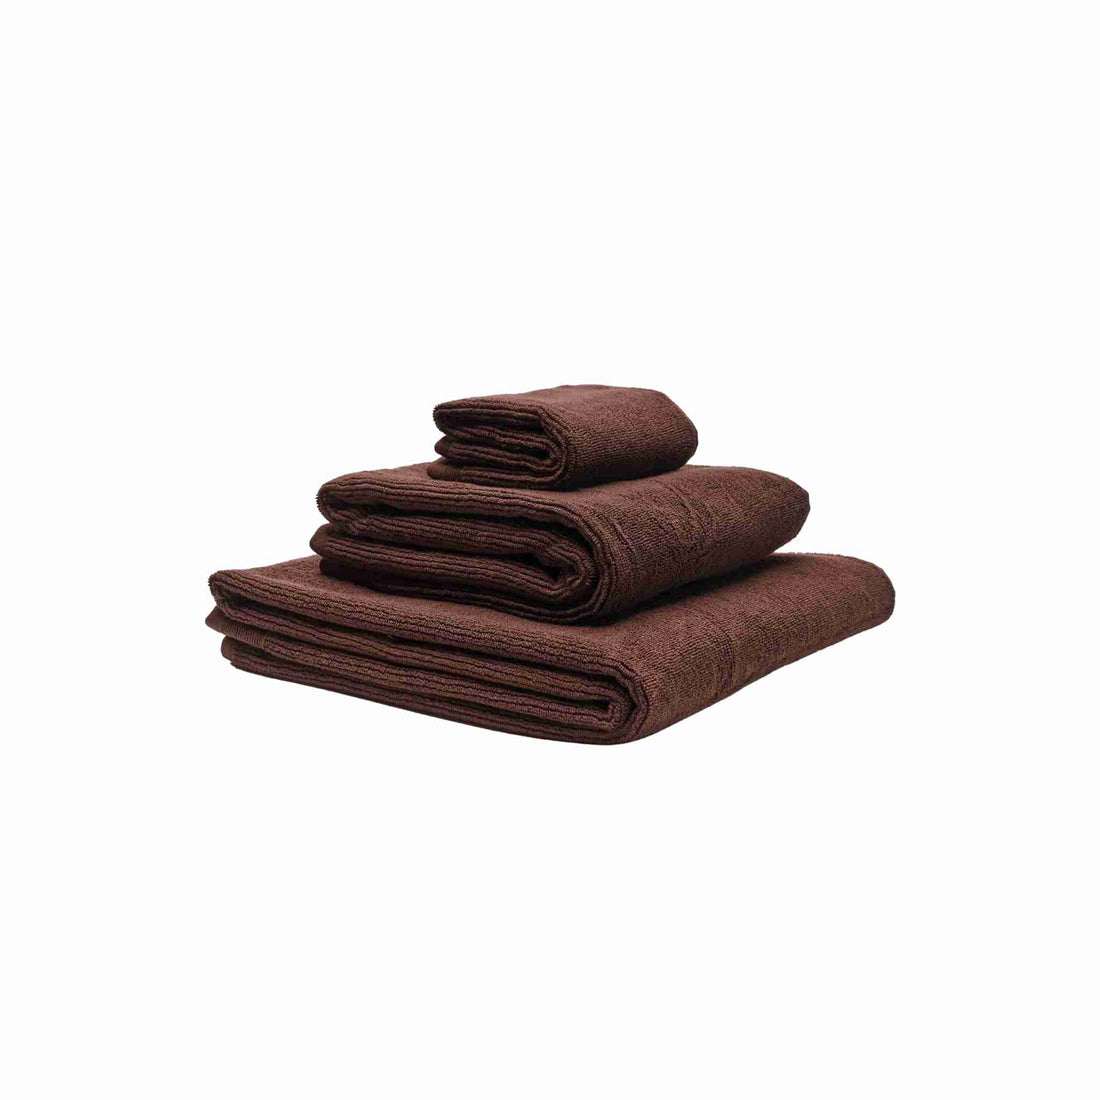 Økologiske håndklæder i farven brun